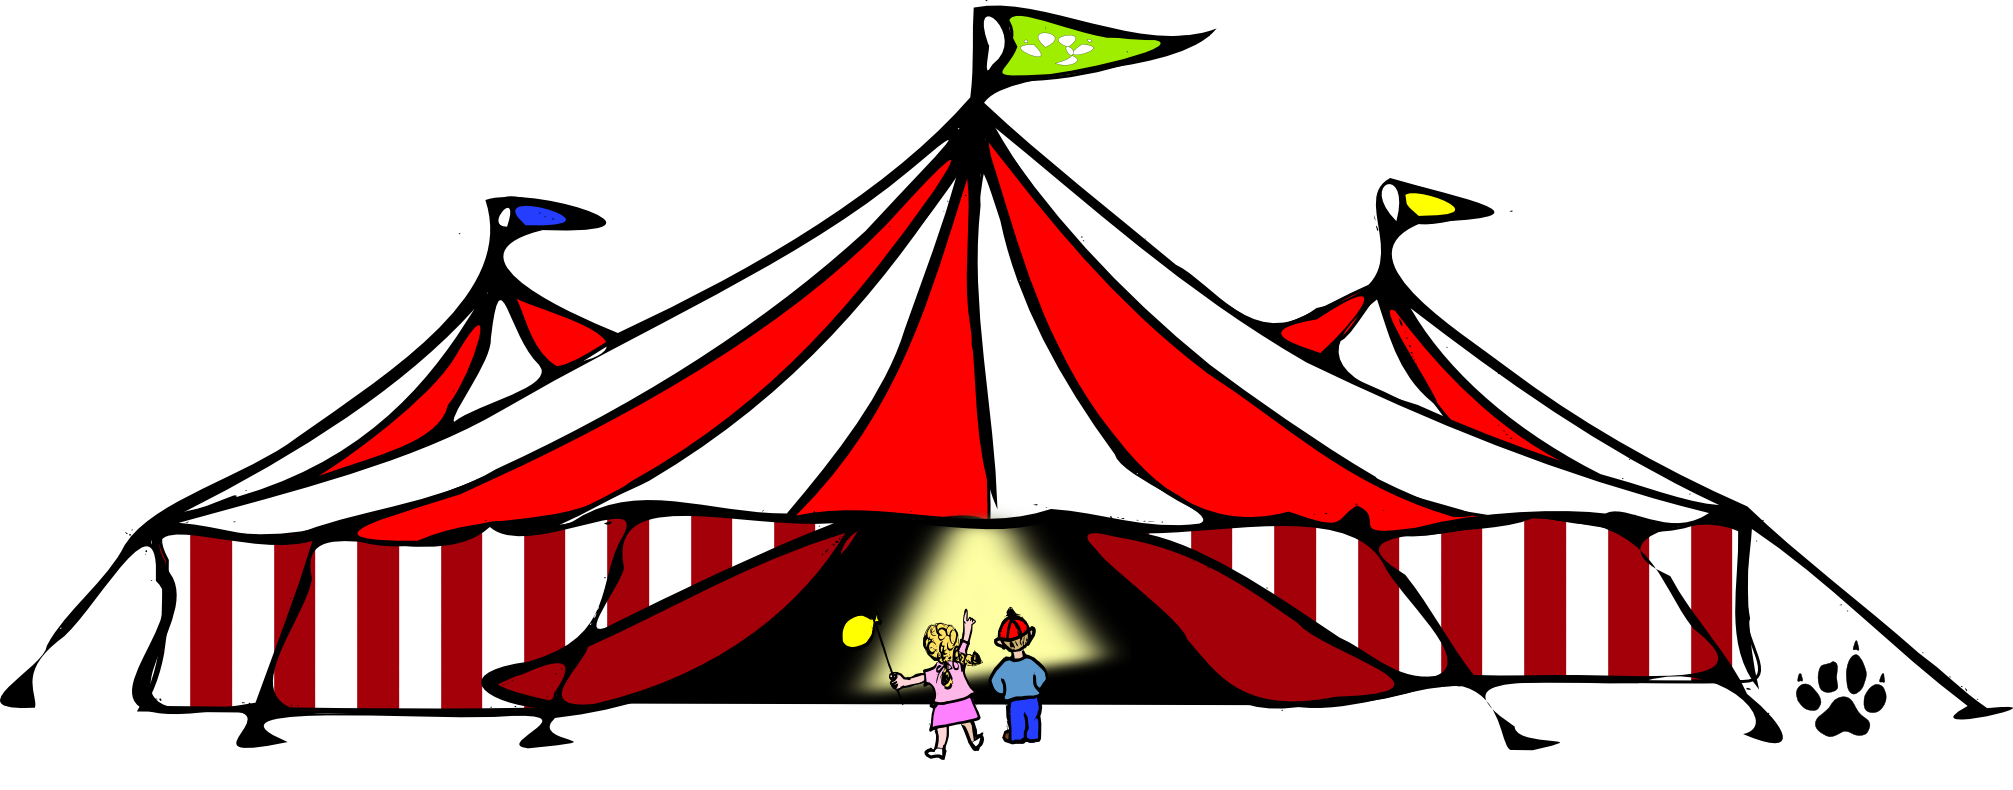 Cicro Di Vision Tent - Circo Di Vision: Circus Insight Cards (2013x790)